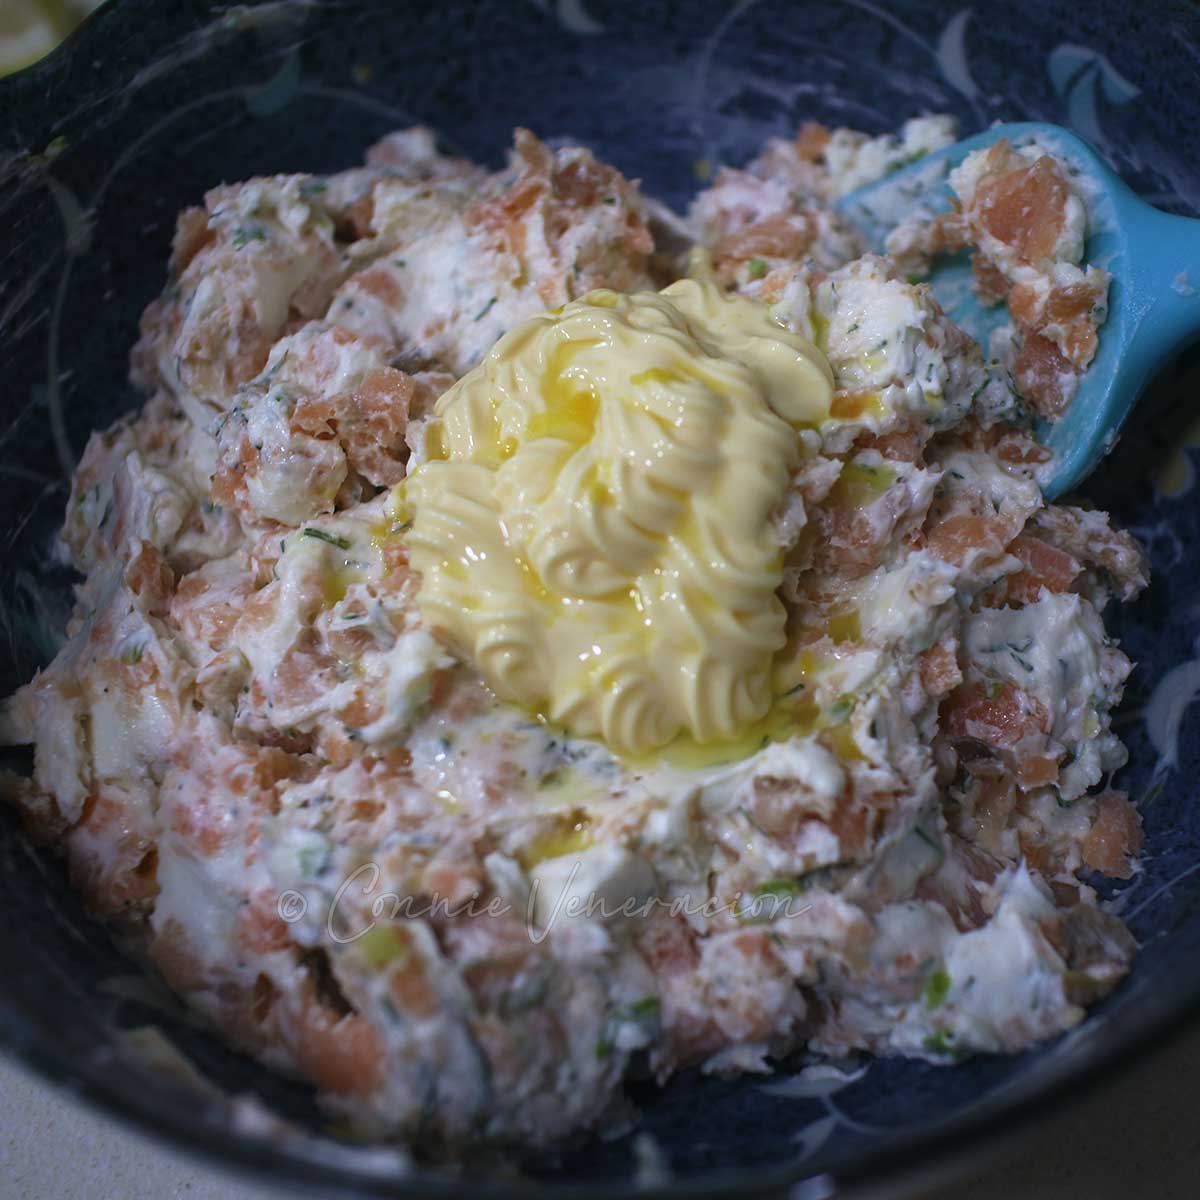 Adding Japanese mayo and lemon juice to smoked salmon and cream cheese pâté